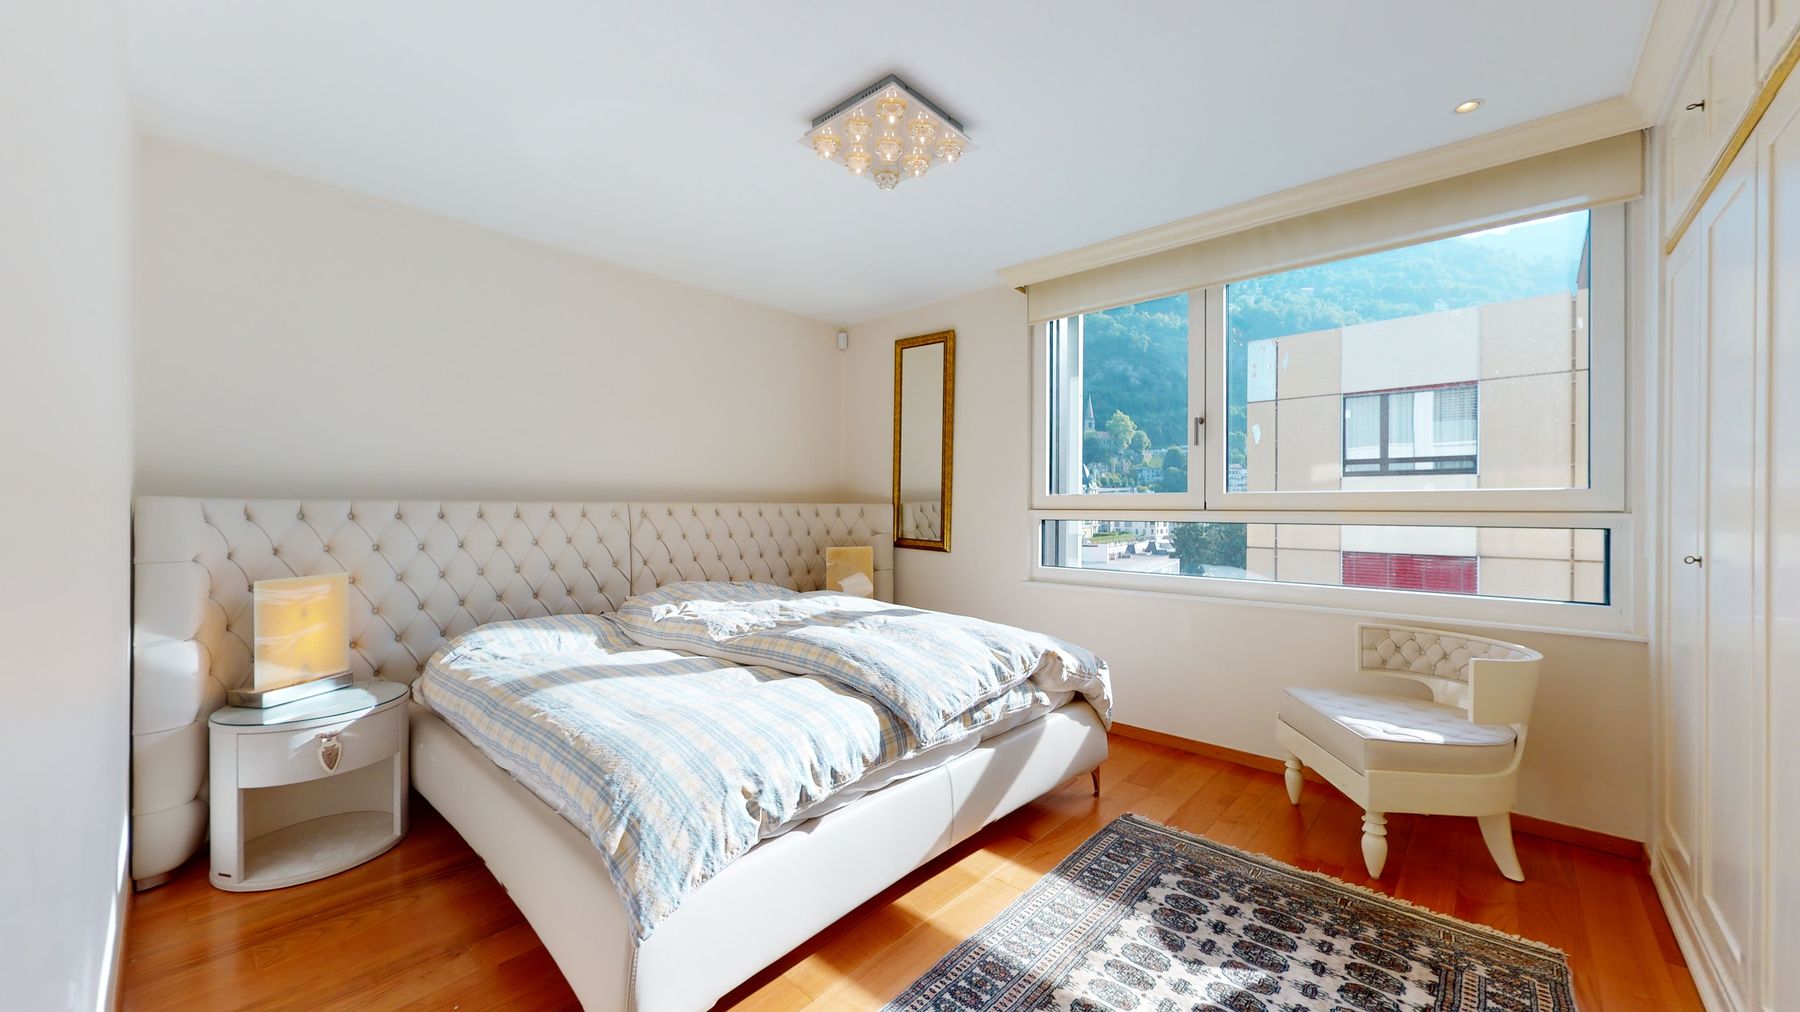 Théatre 7B Chambre 2 Magnique appartement en bordure de lac, vue, grand balcon, à deux pas du centre ville de Montreux